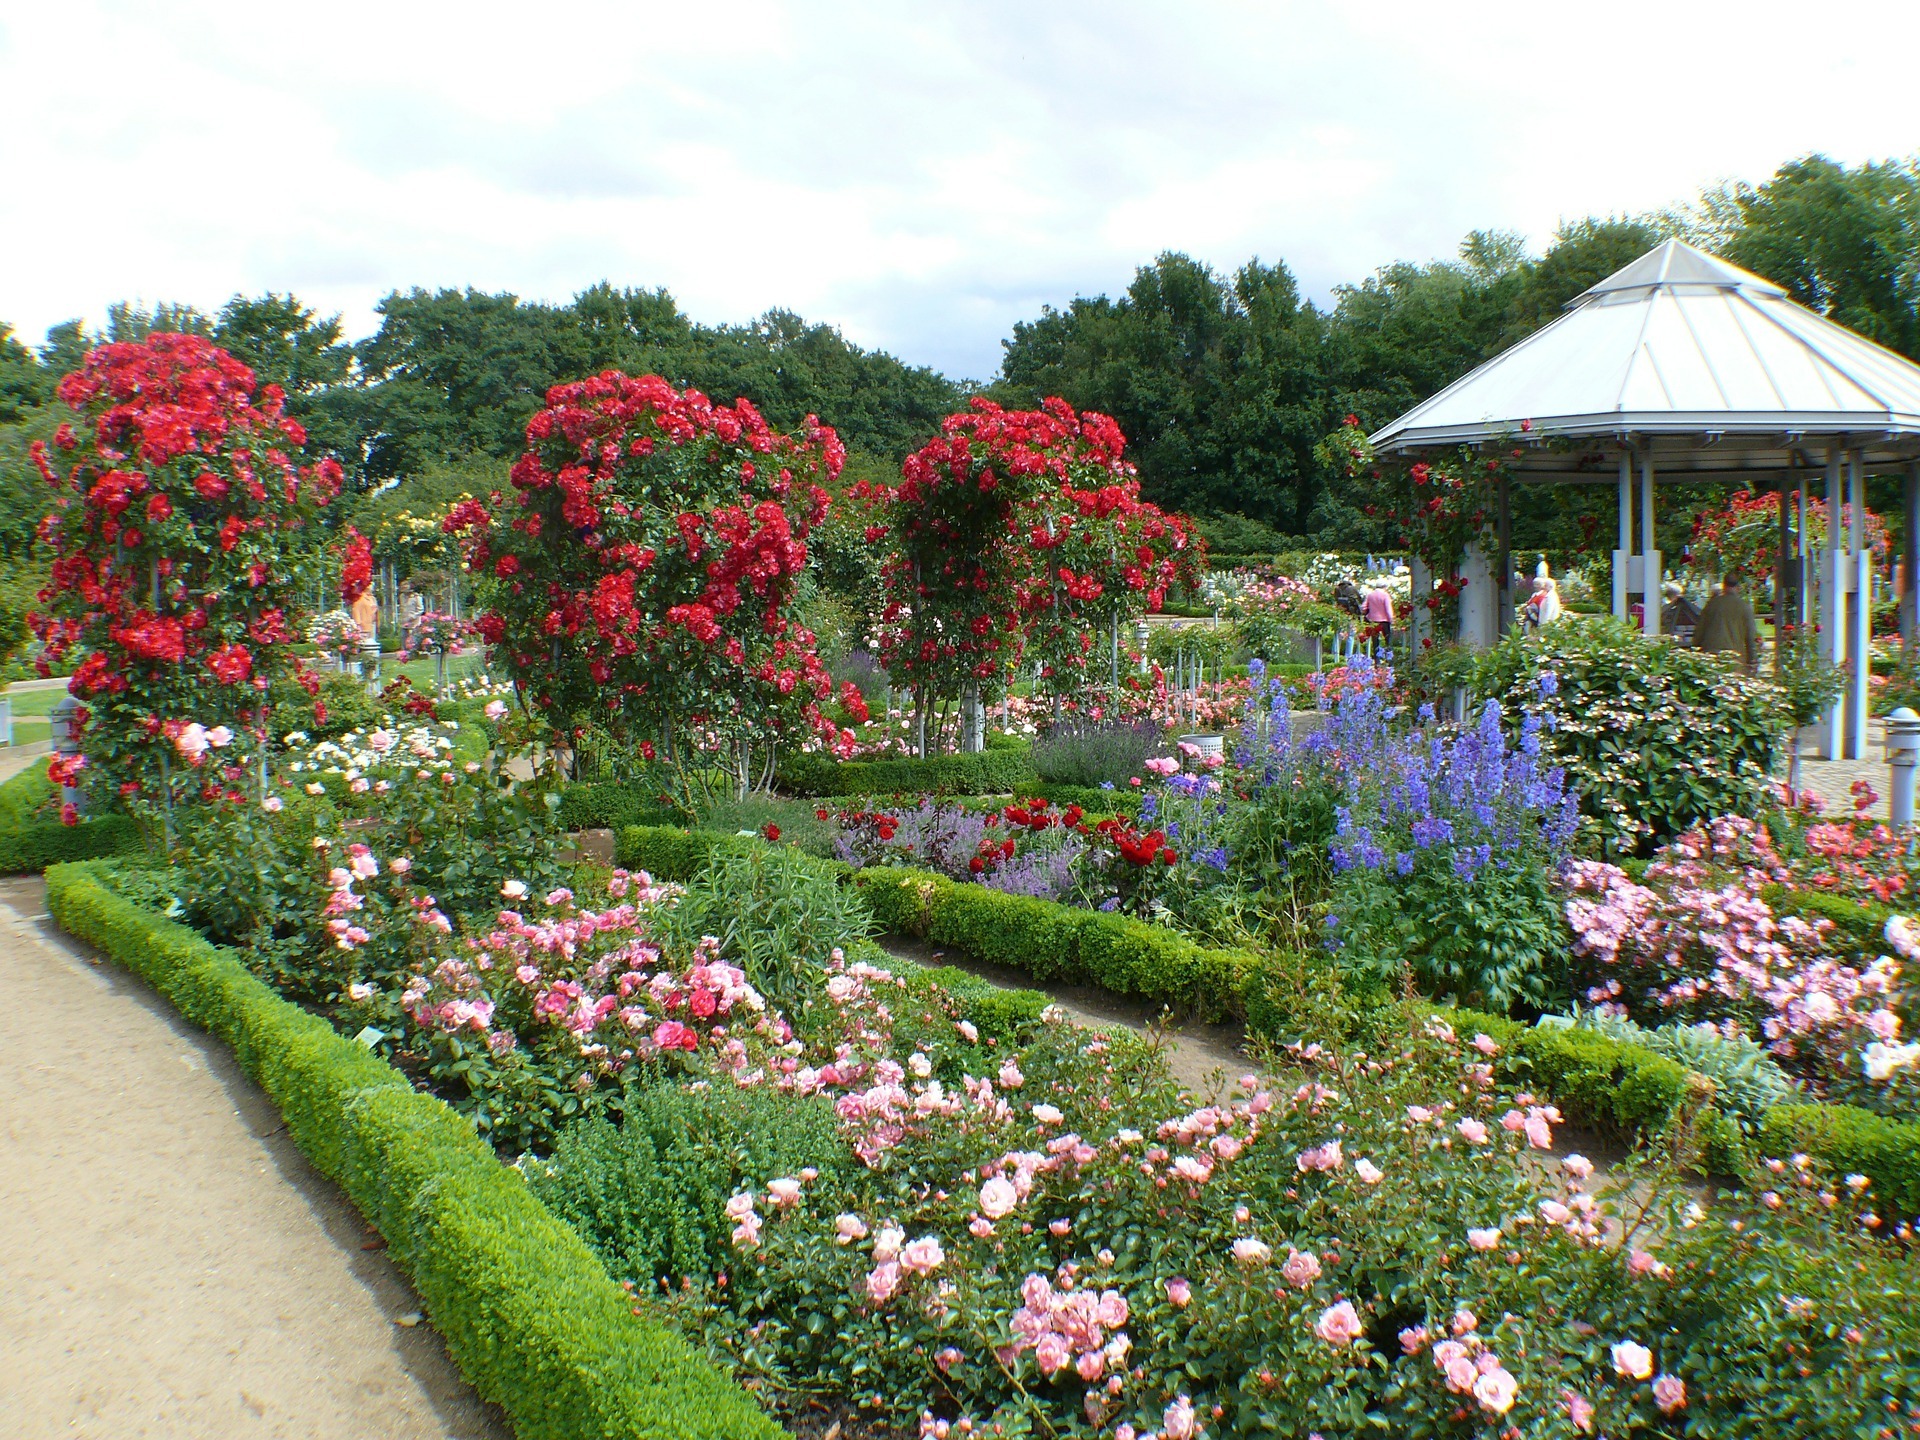 Rosengarten mit hochgebundenen roten Rosen